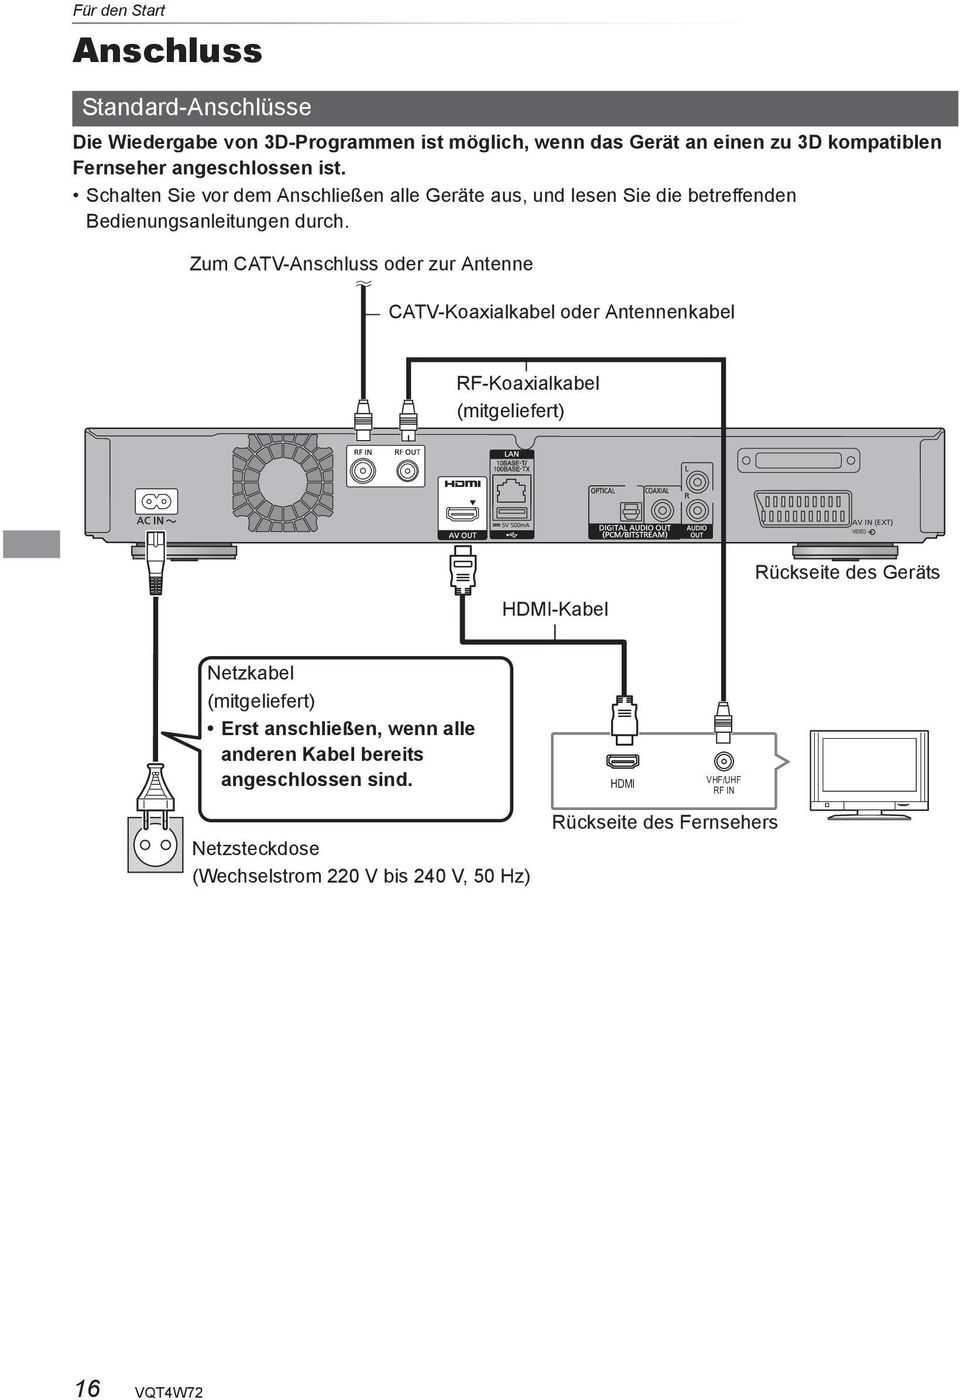 Zum CATV-Anschluss oder zur Antenne CATV-Koaxialkabel oder Antennenkabel RF-Koaxialkabel (mitgeliefert) AV IN (EXT) VIDEO HDMI-Kabel Rückseite des Geräts